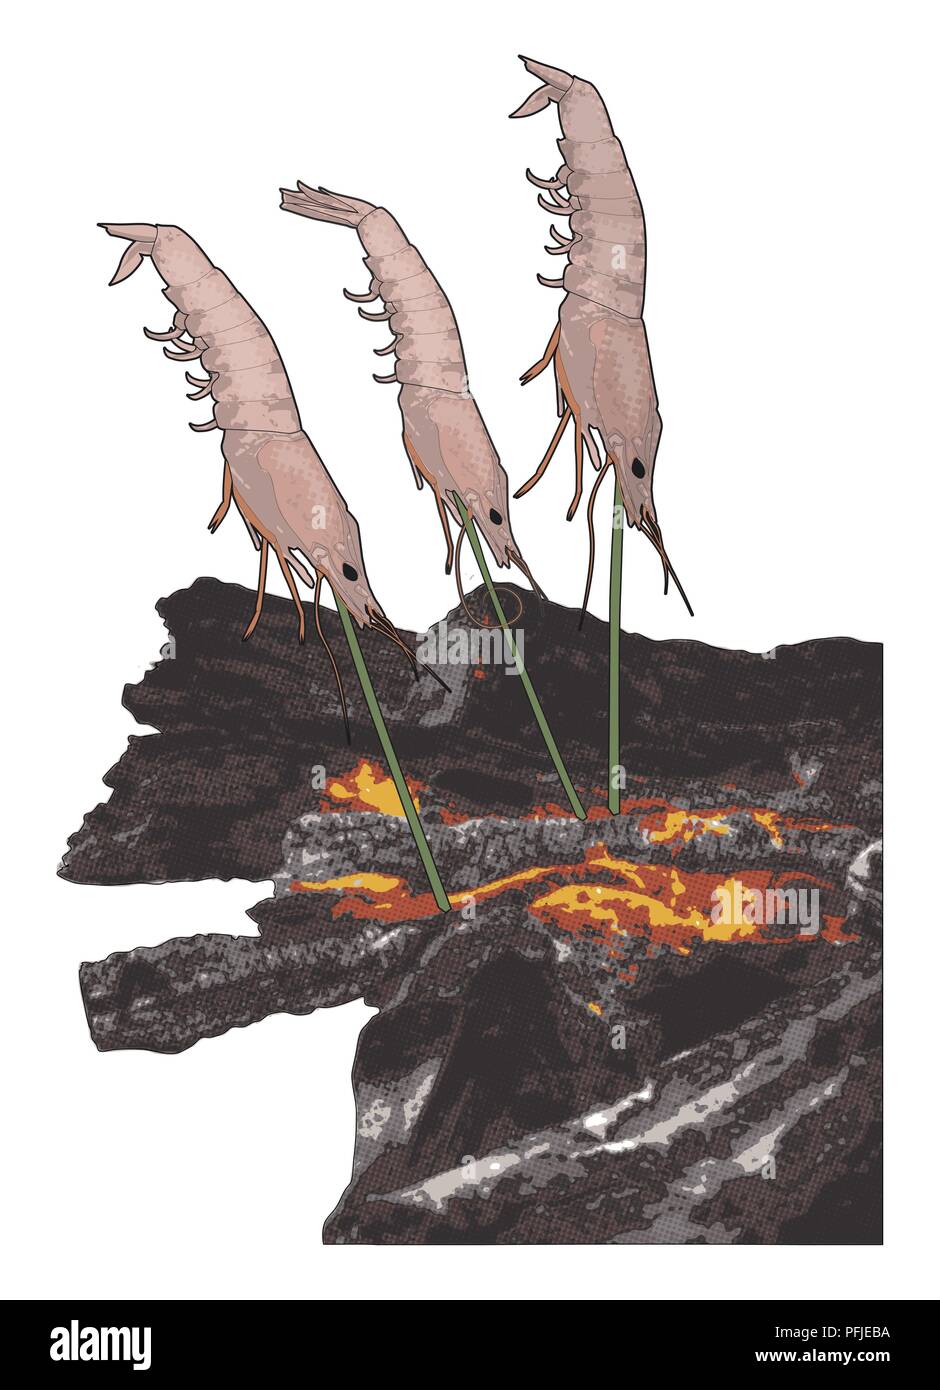 Compuesta Digital ilustración de tres camarones en brochetas de palo verde pegada en el suelo en ángulo sobre ascuas calientes Foto de stock